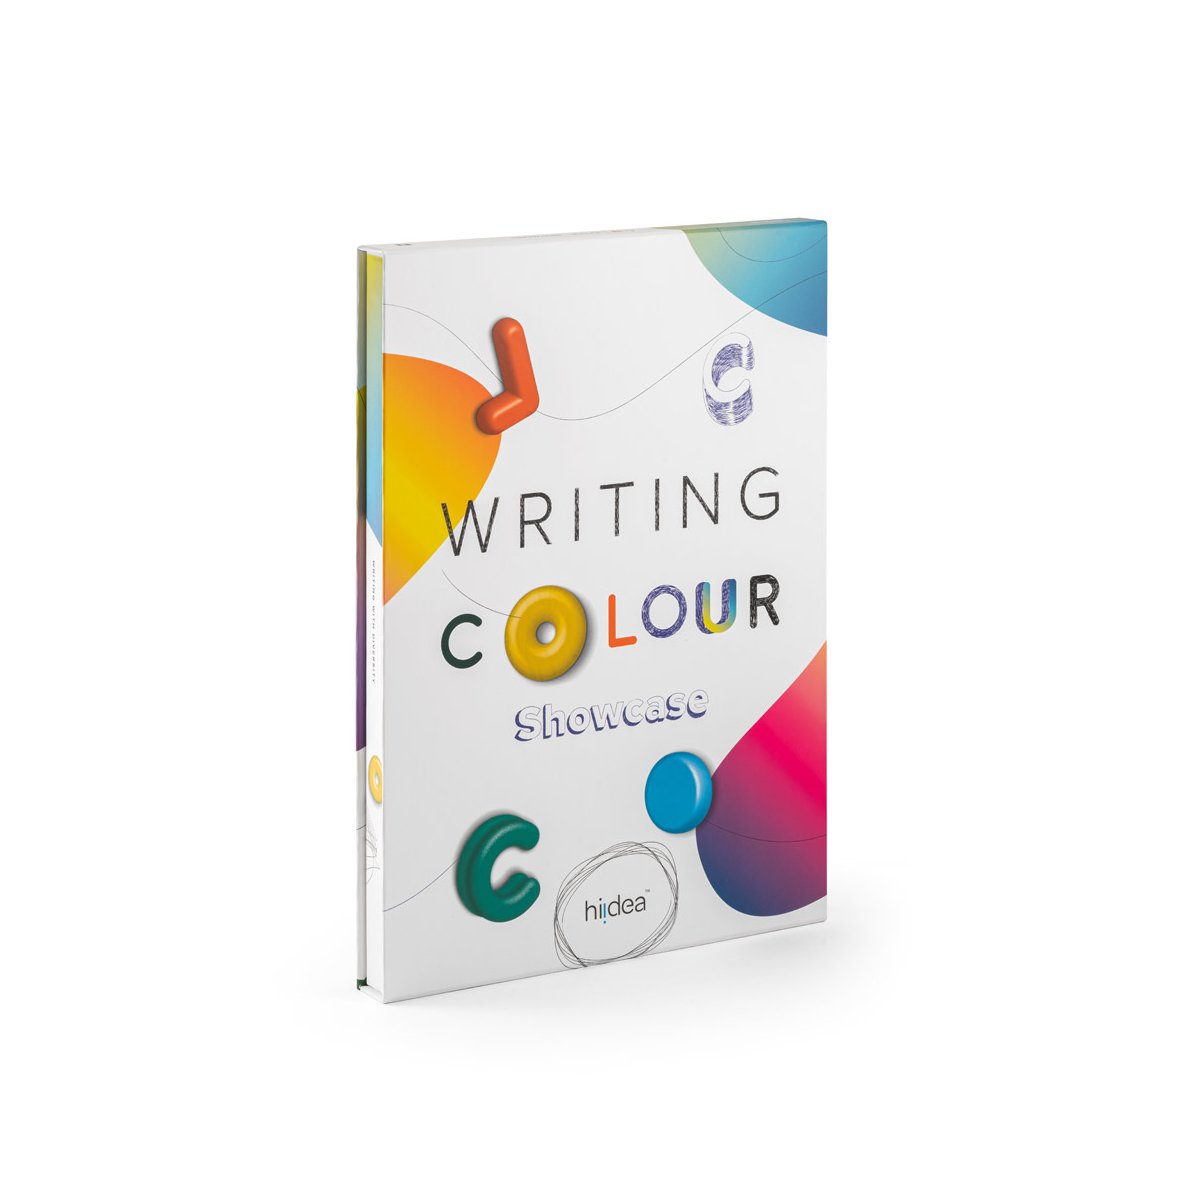 COLOUR WRITING SHOWCASE. Wzornik z 20 kolorowymi długopisami - Mix